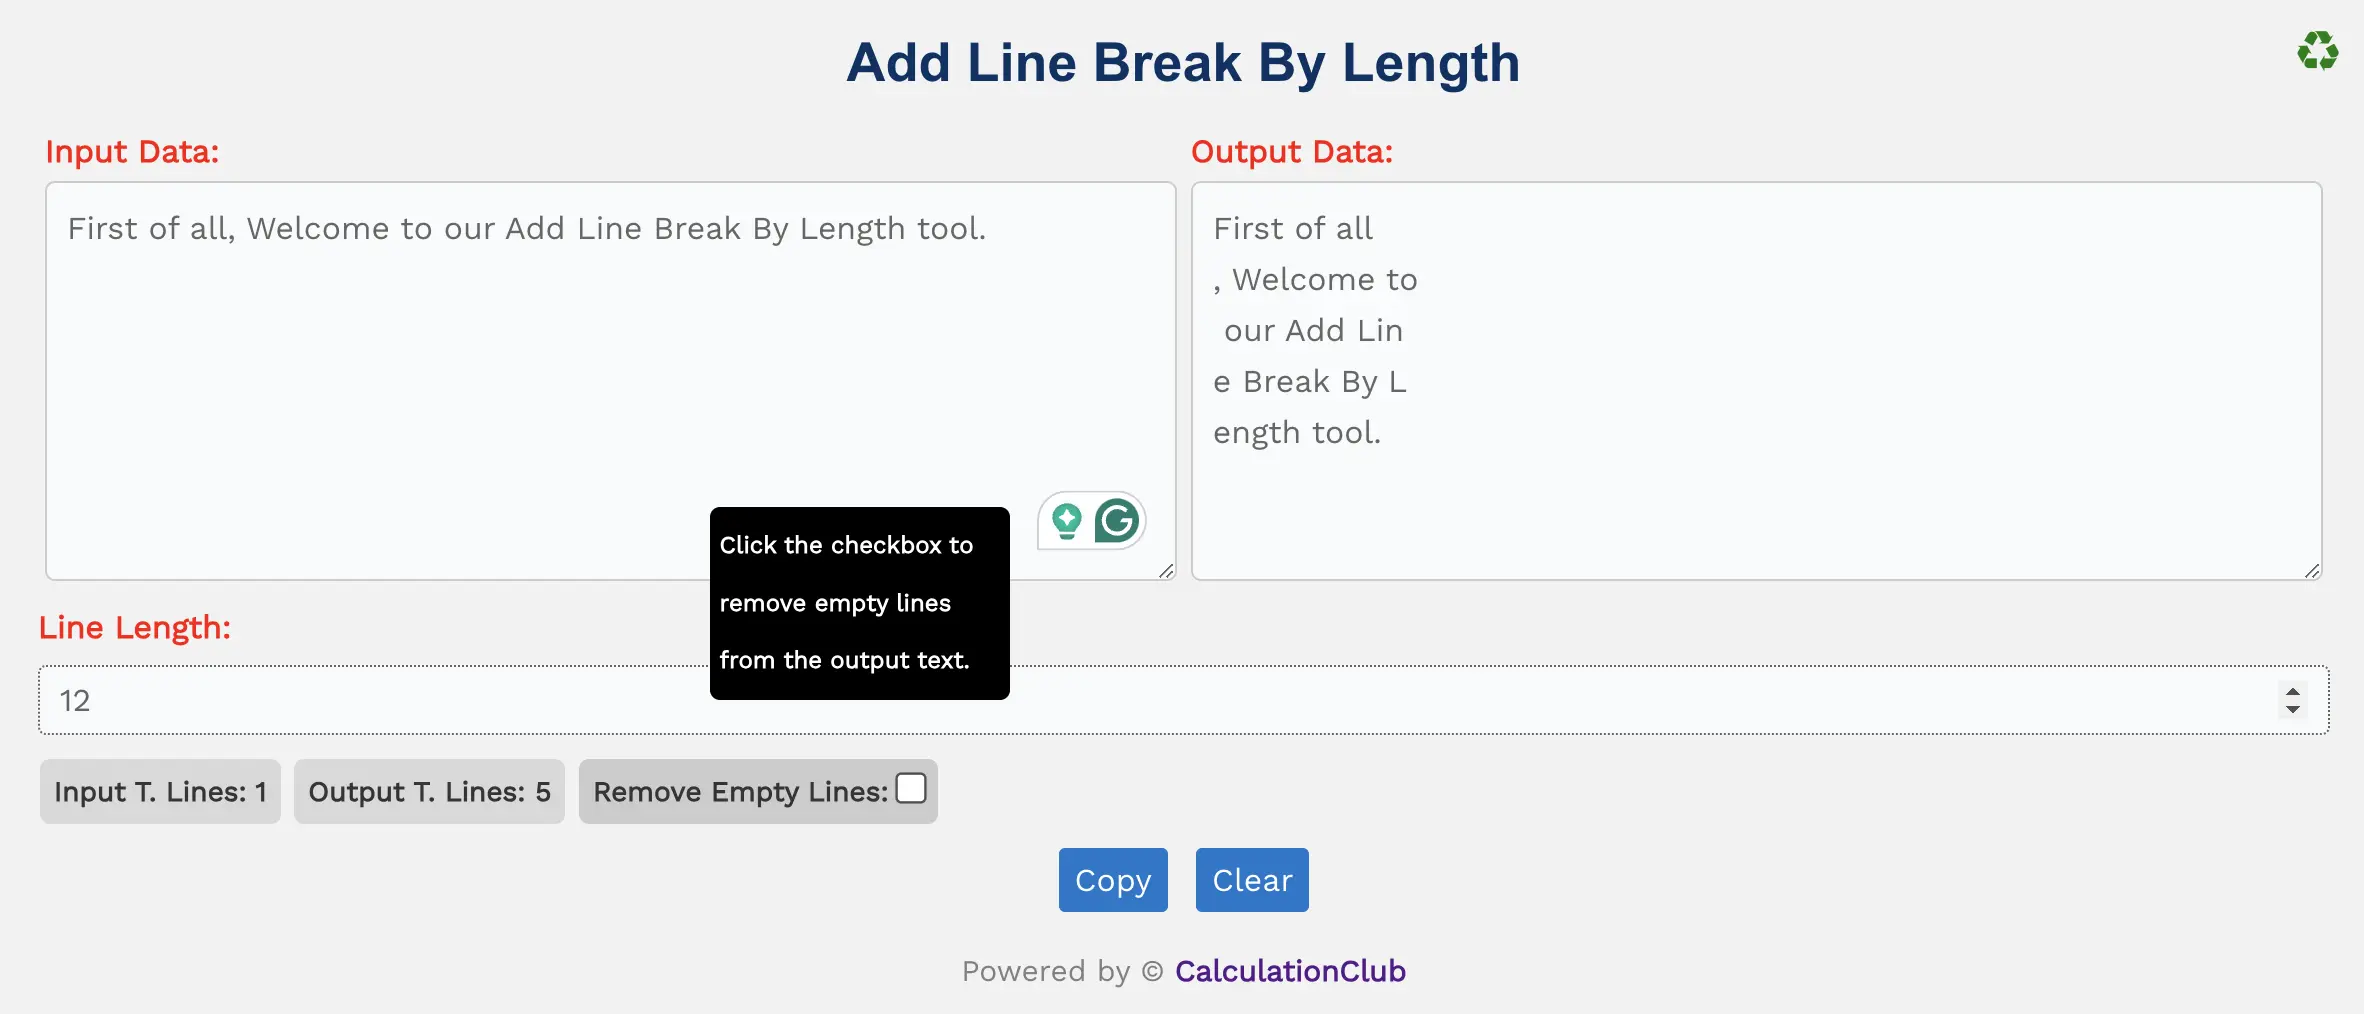 Add Line Break By Length